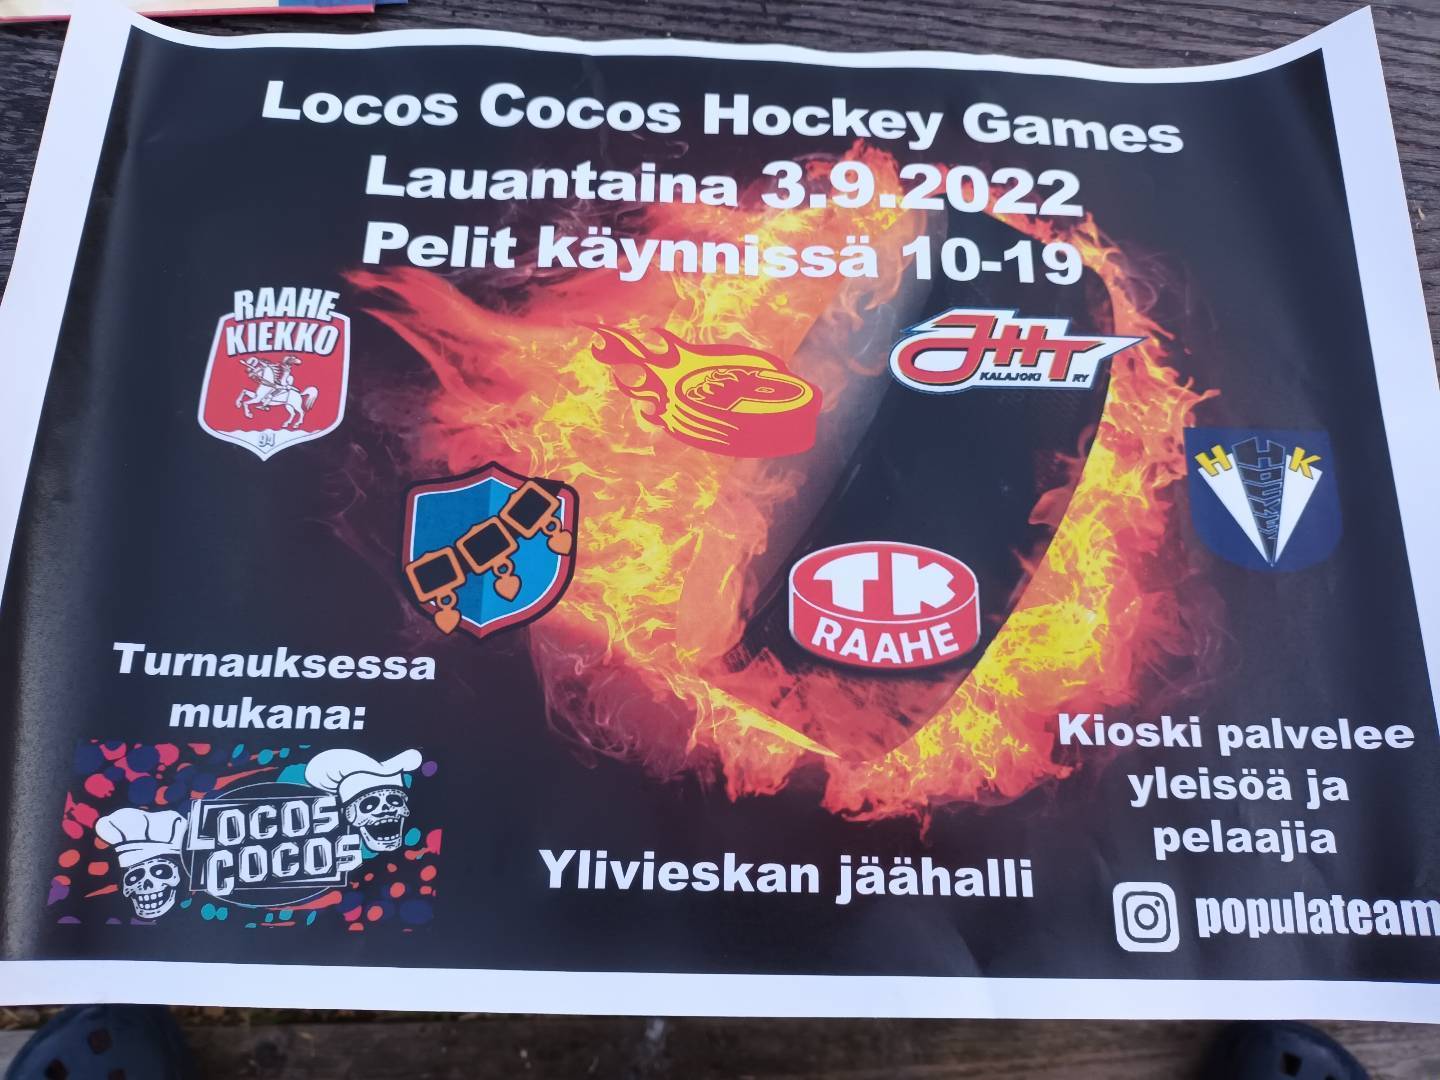 Locos cocos hockey games 2022!